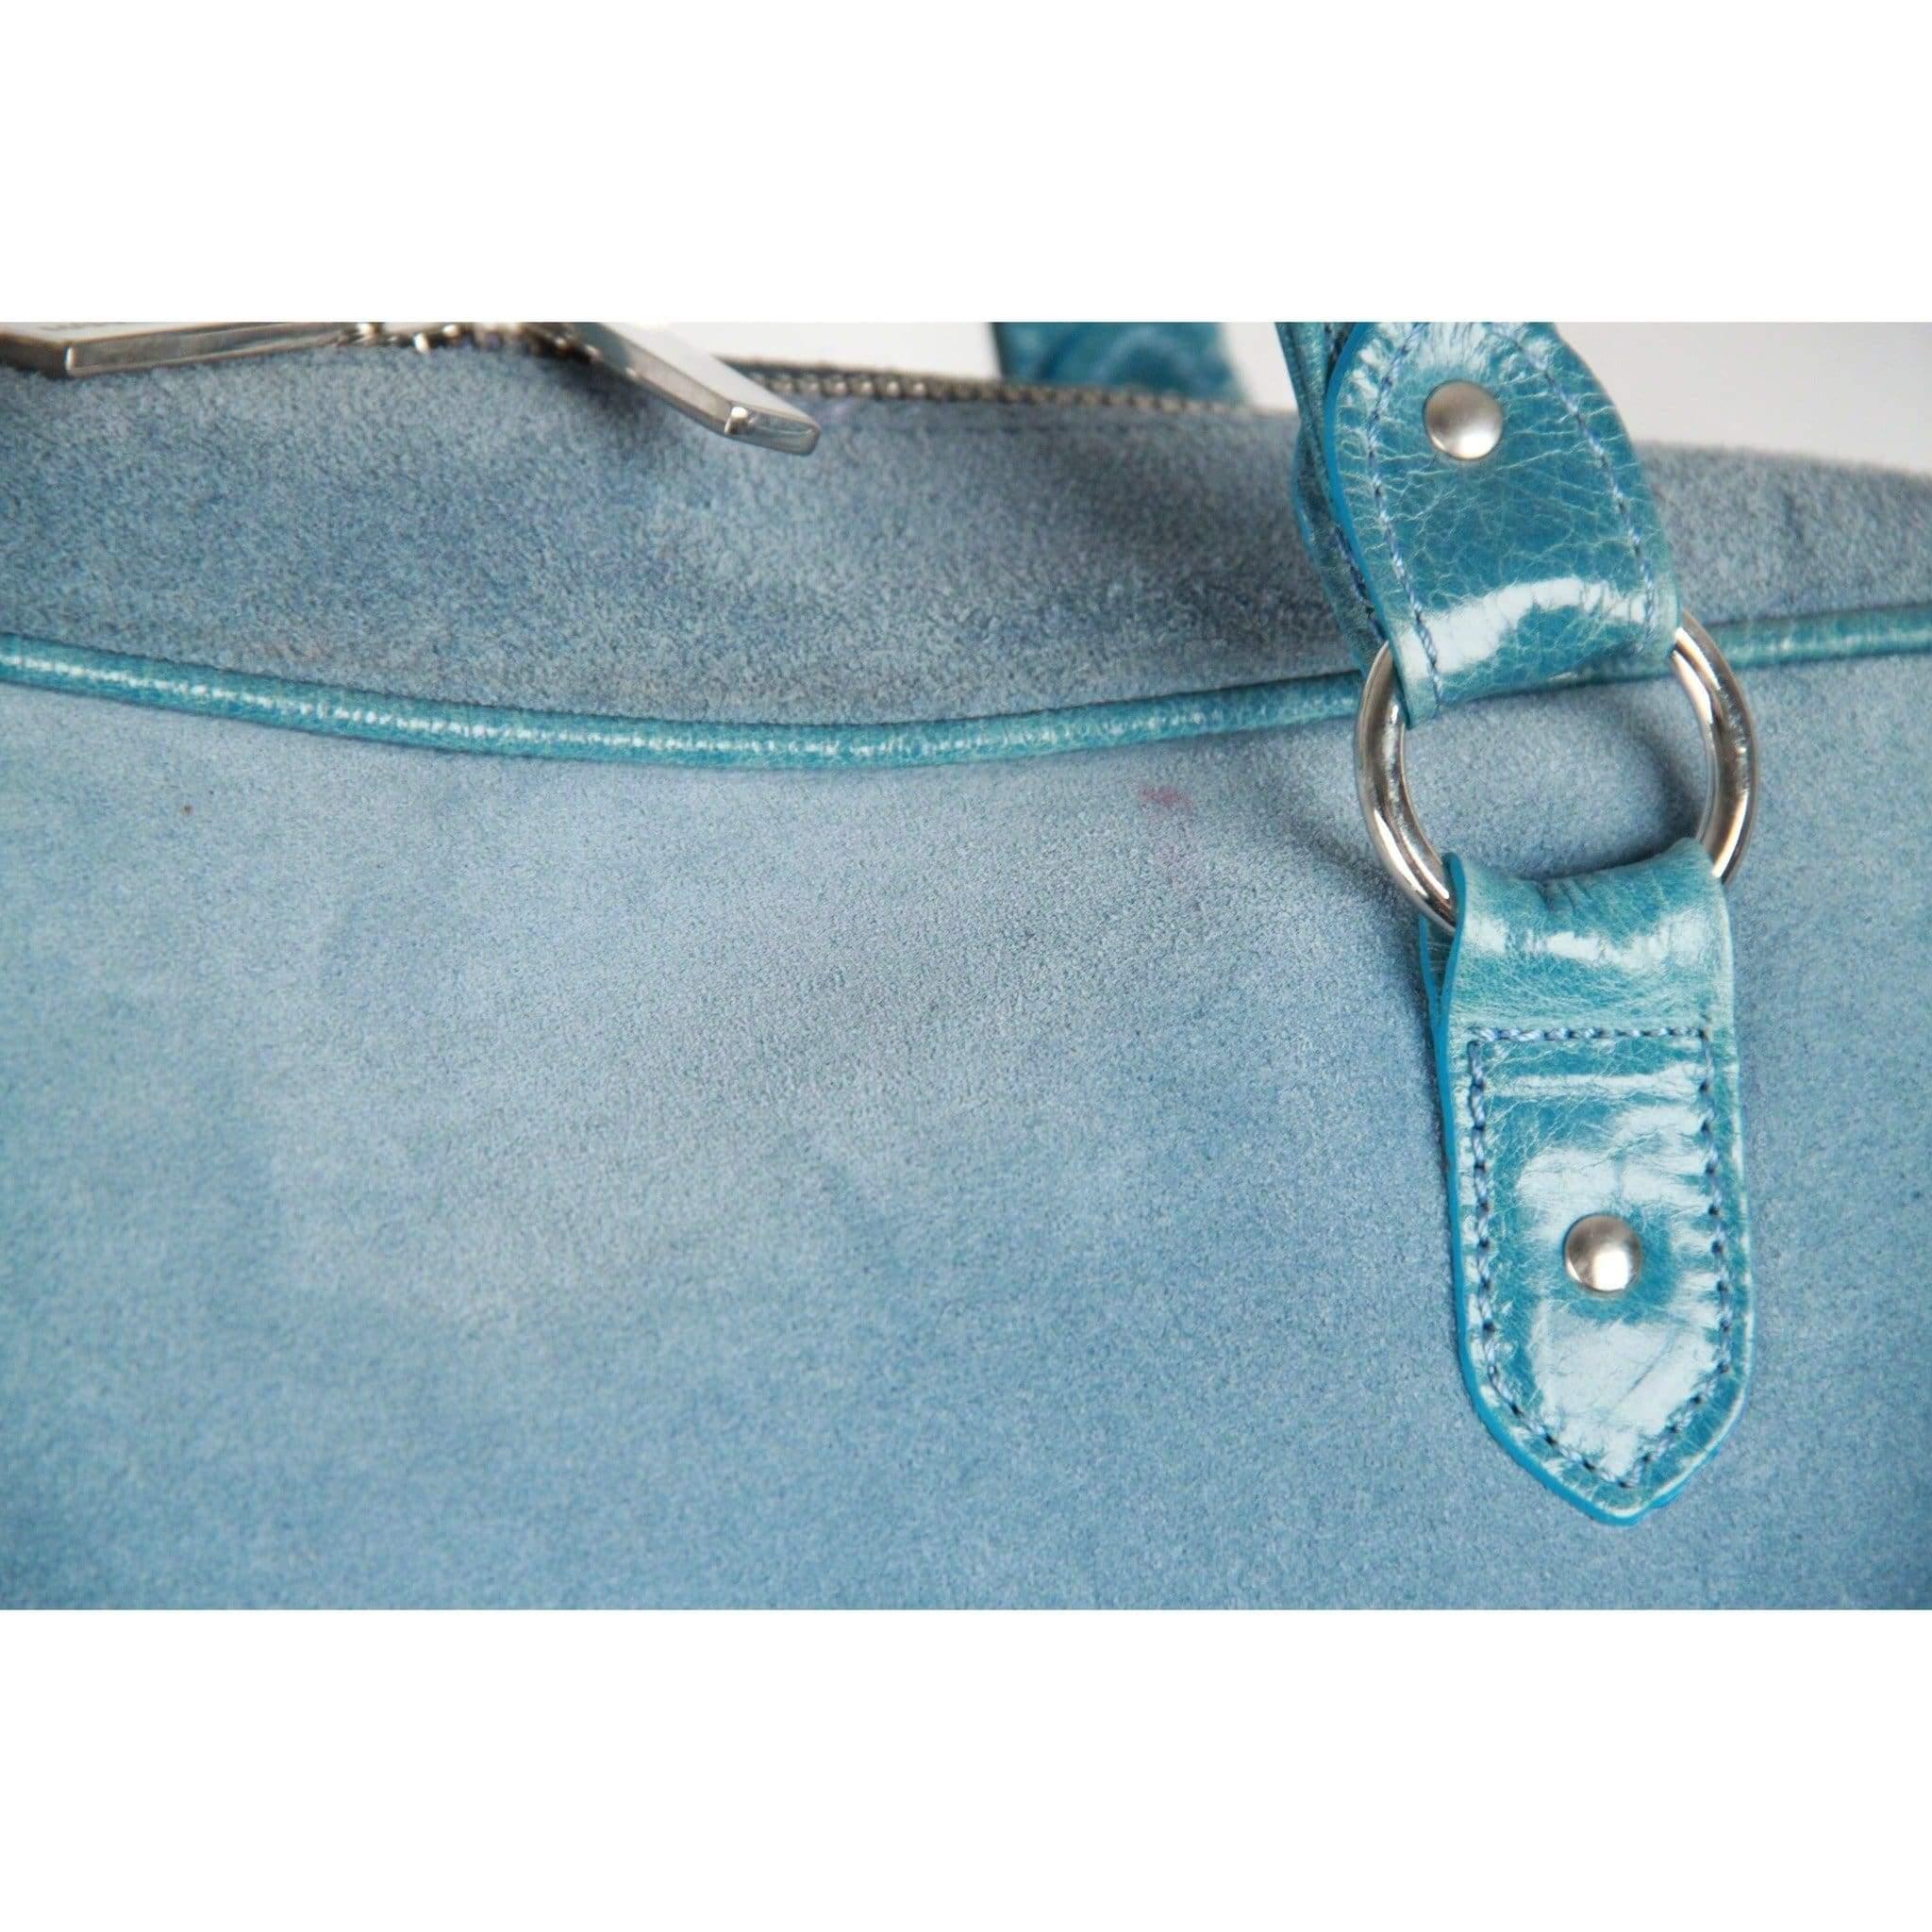 light blue suede handbag